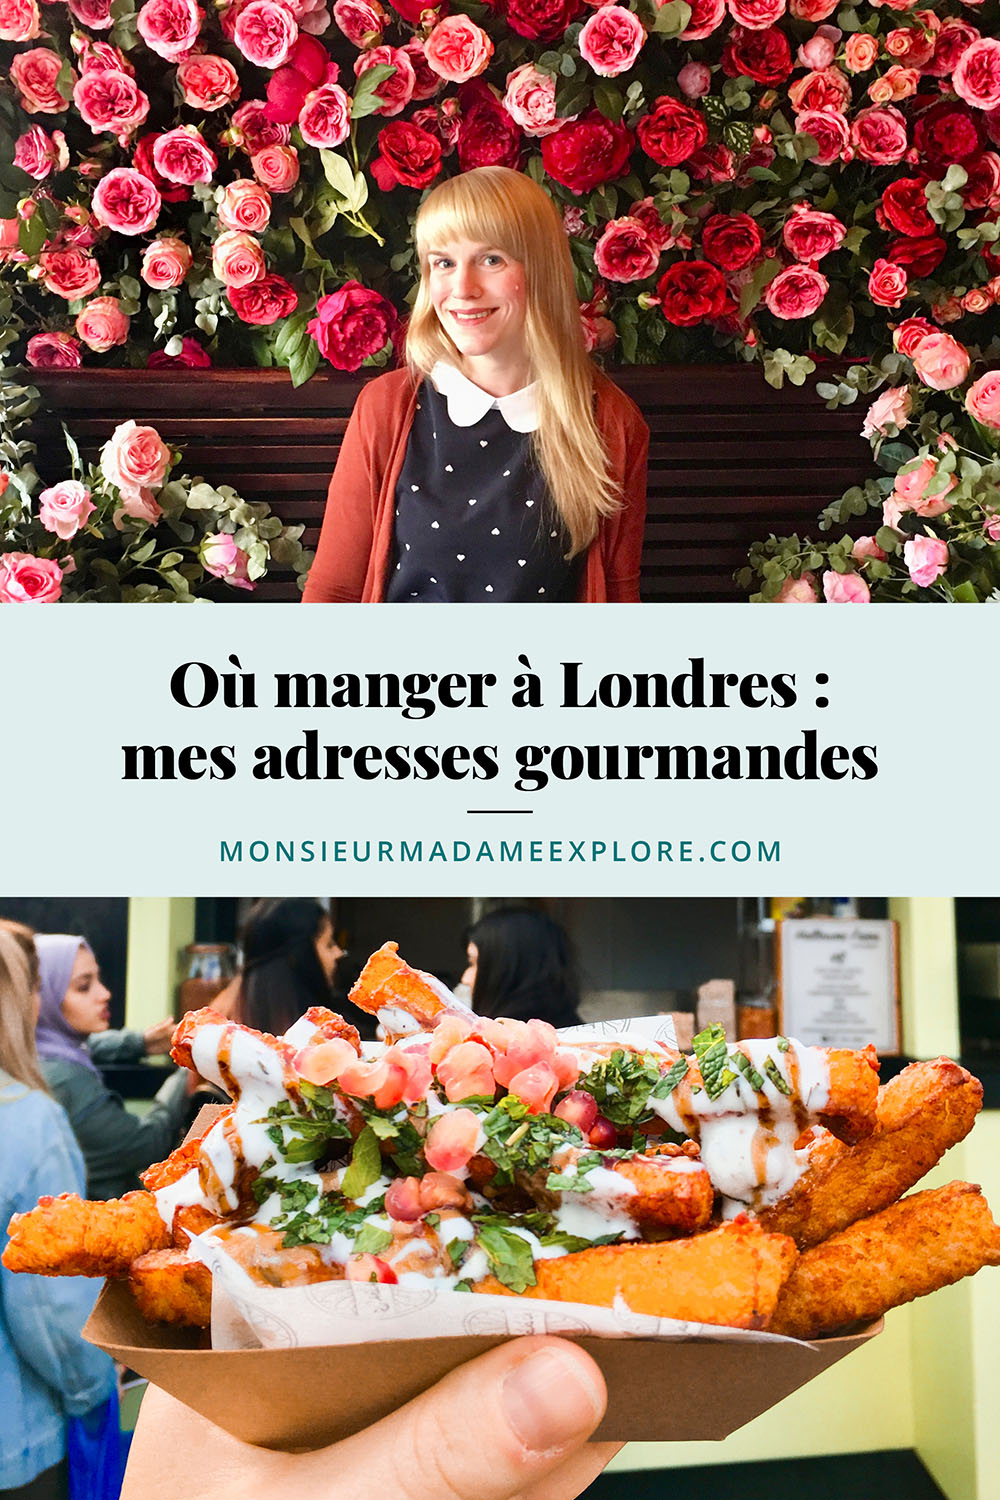 Où manger à Londres : mes bonnes adresses gourmandes, Monsieur+Madame Explore, Blogue de voyage, Angleterre, Royaume-Uni / Where to eat in London: my favorite restaurants, England, UK